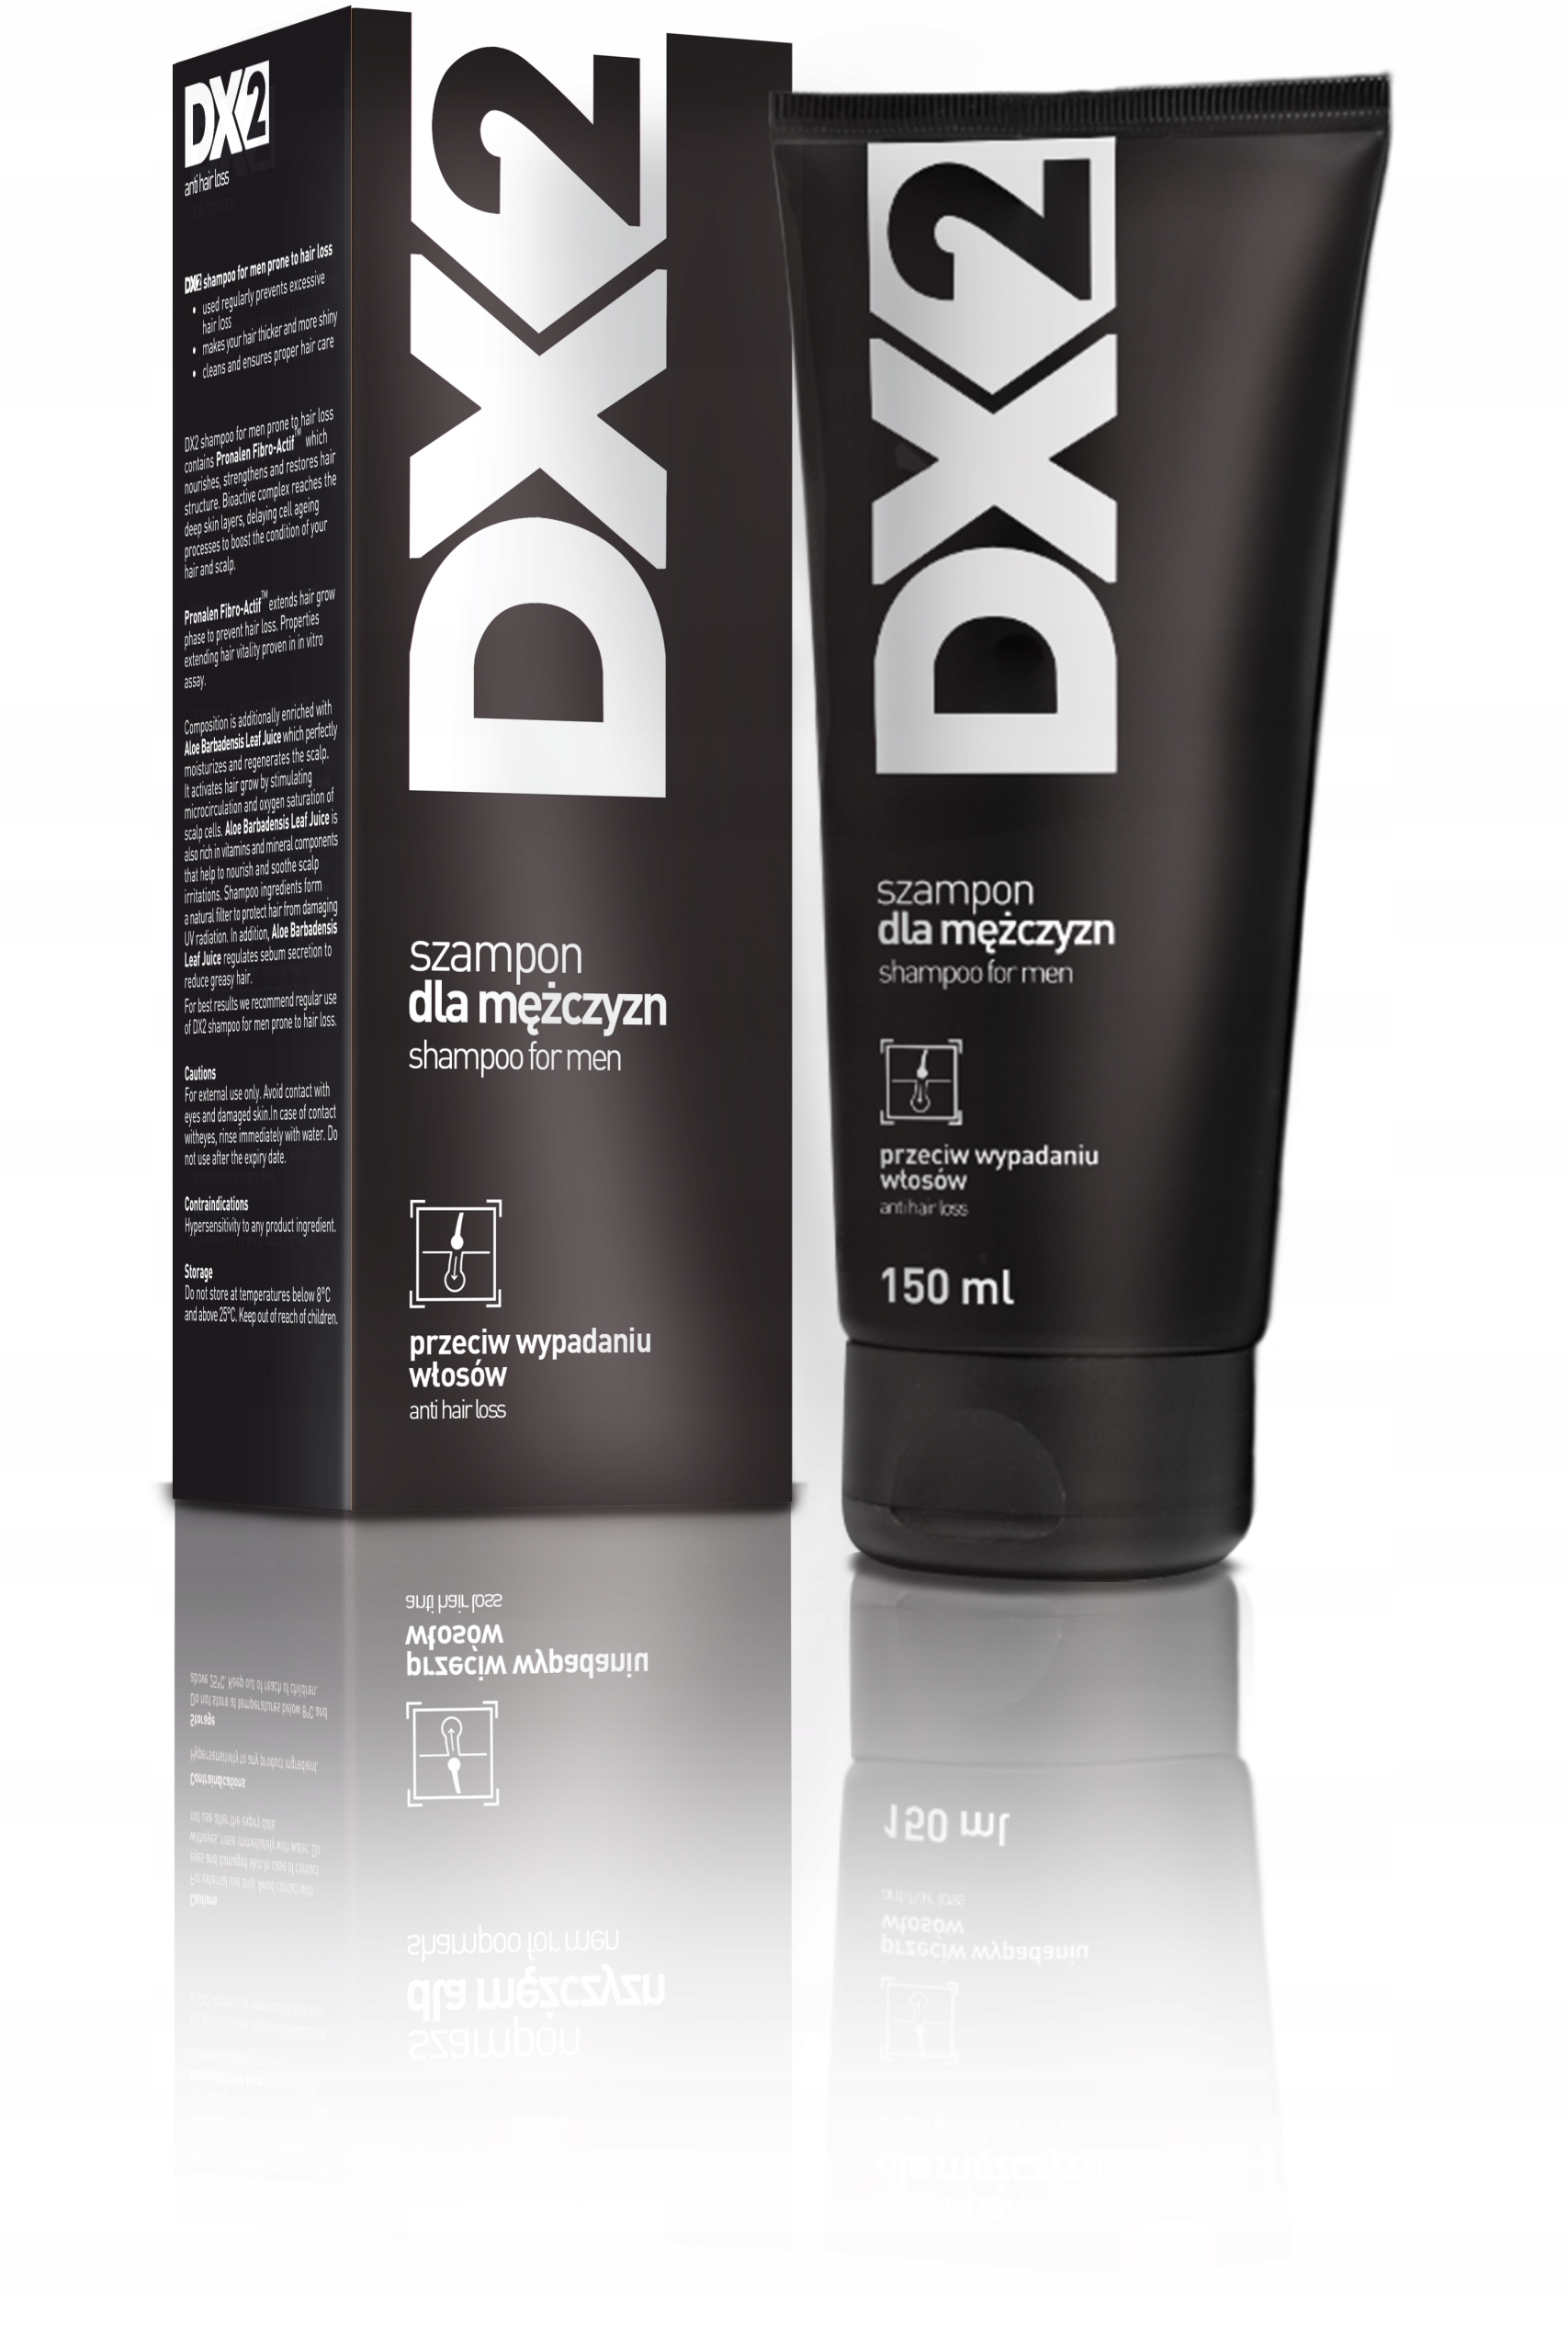 gdzie kupie szampon dx2